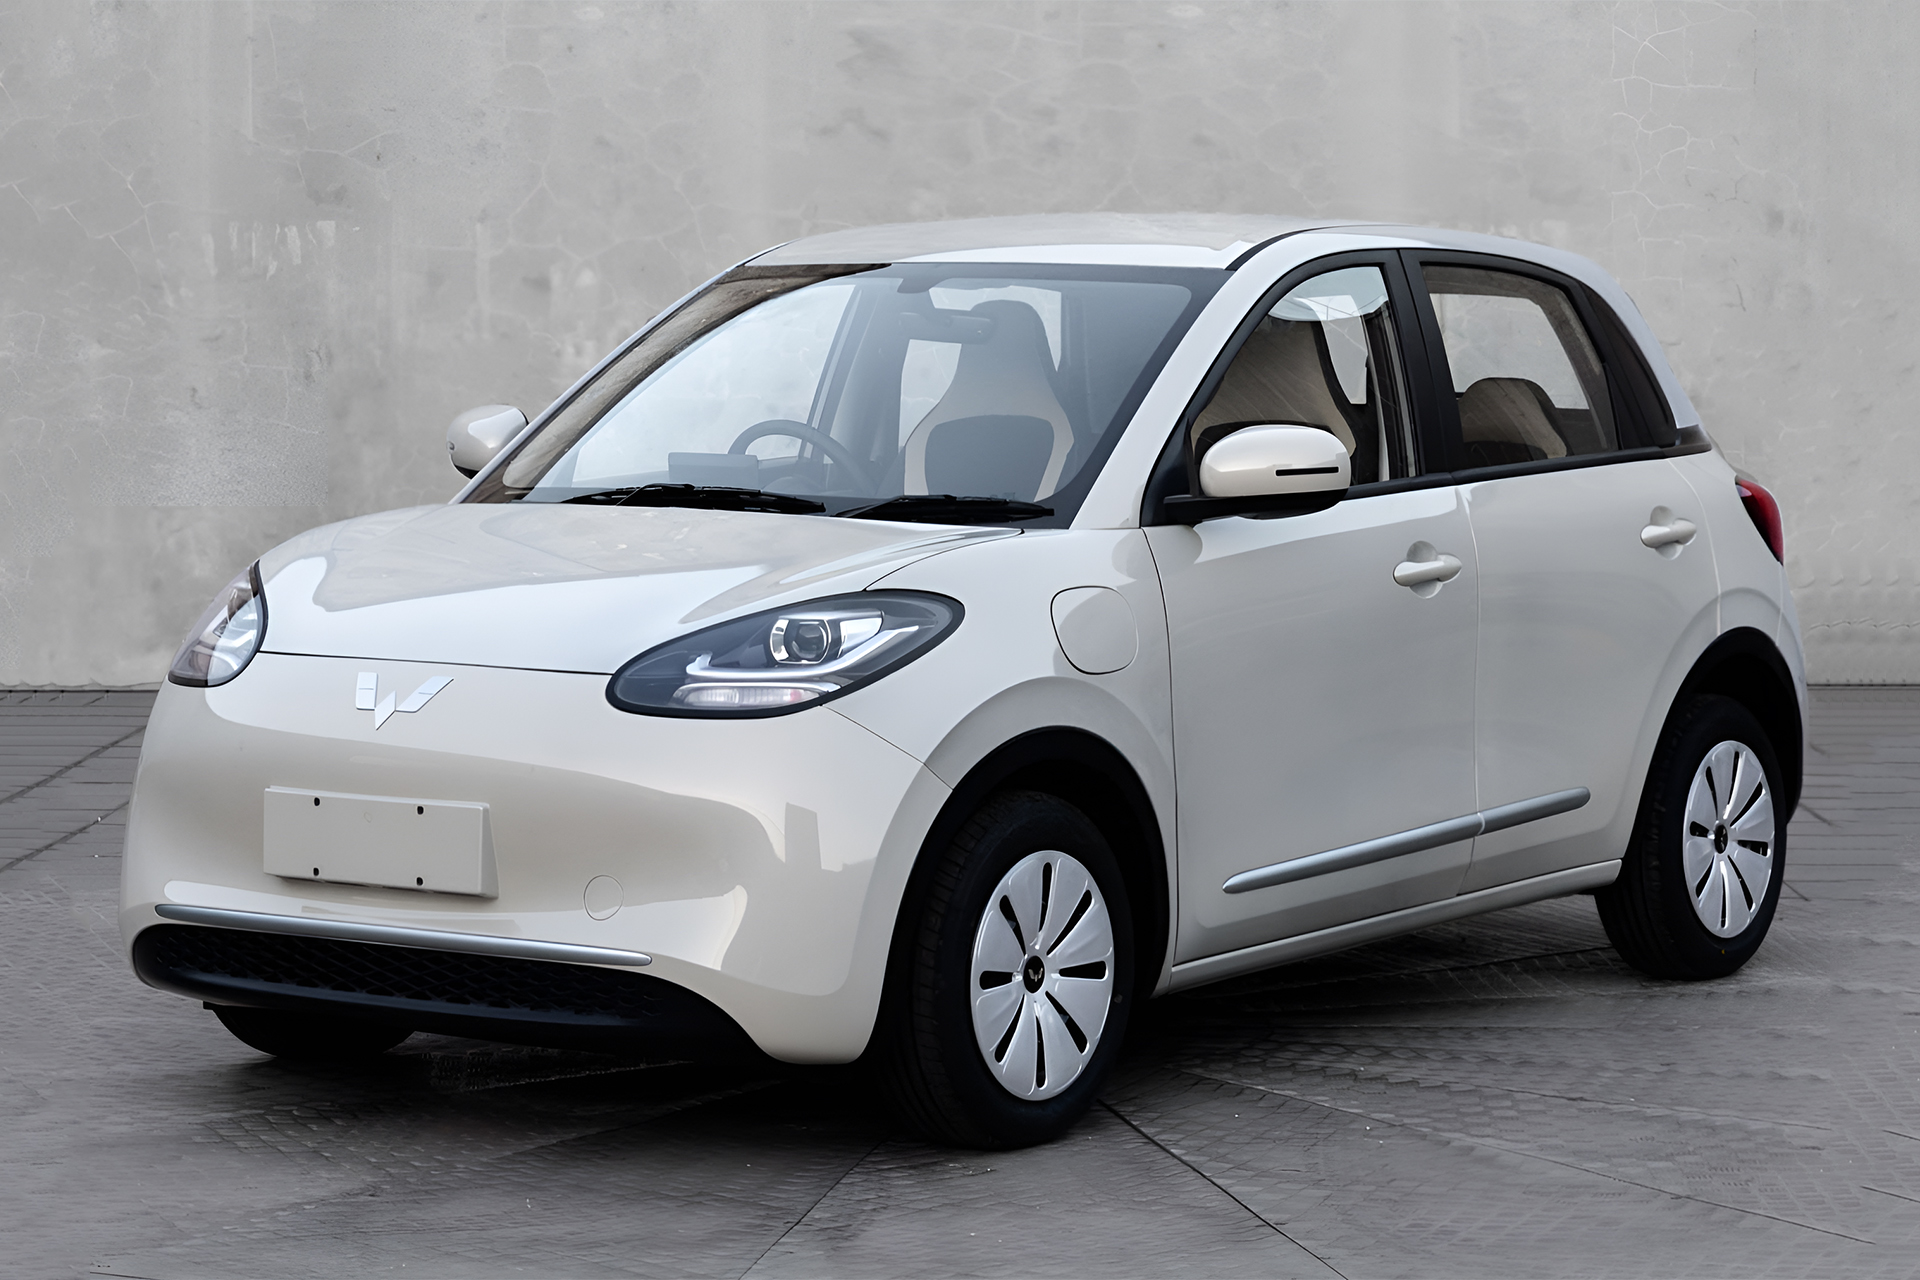 Empresa chinesa desenvolve carro elétrico barato que pode chegar ao mercado custando cerca de R$ 20 mil e com autonomia maior que 300 km